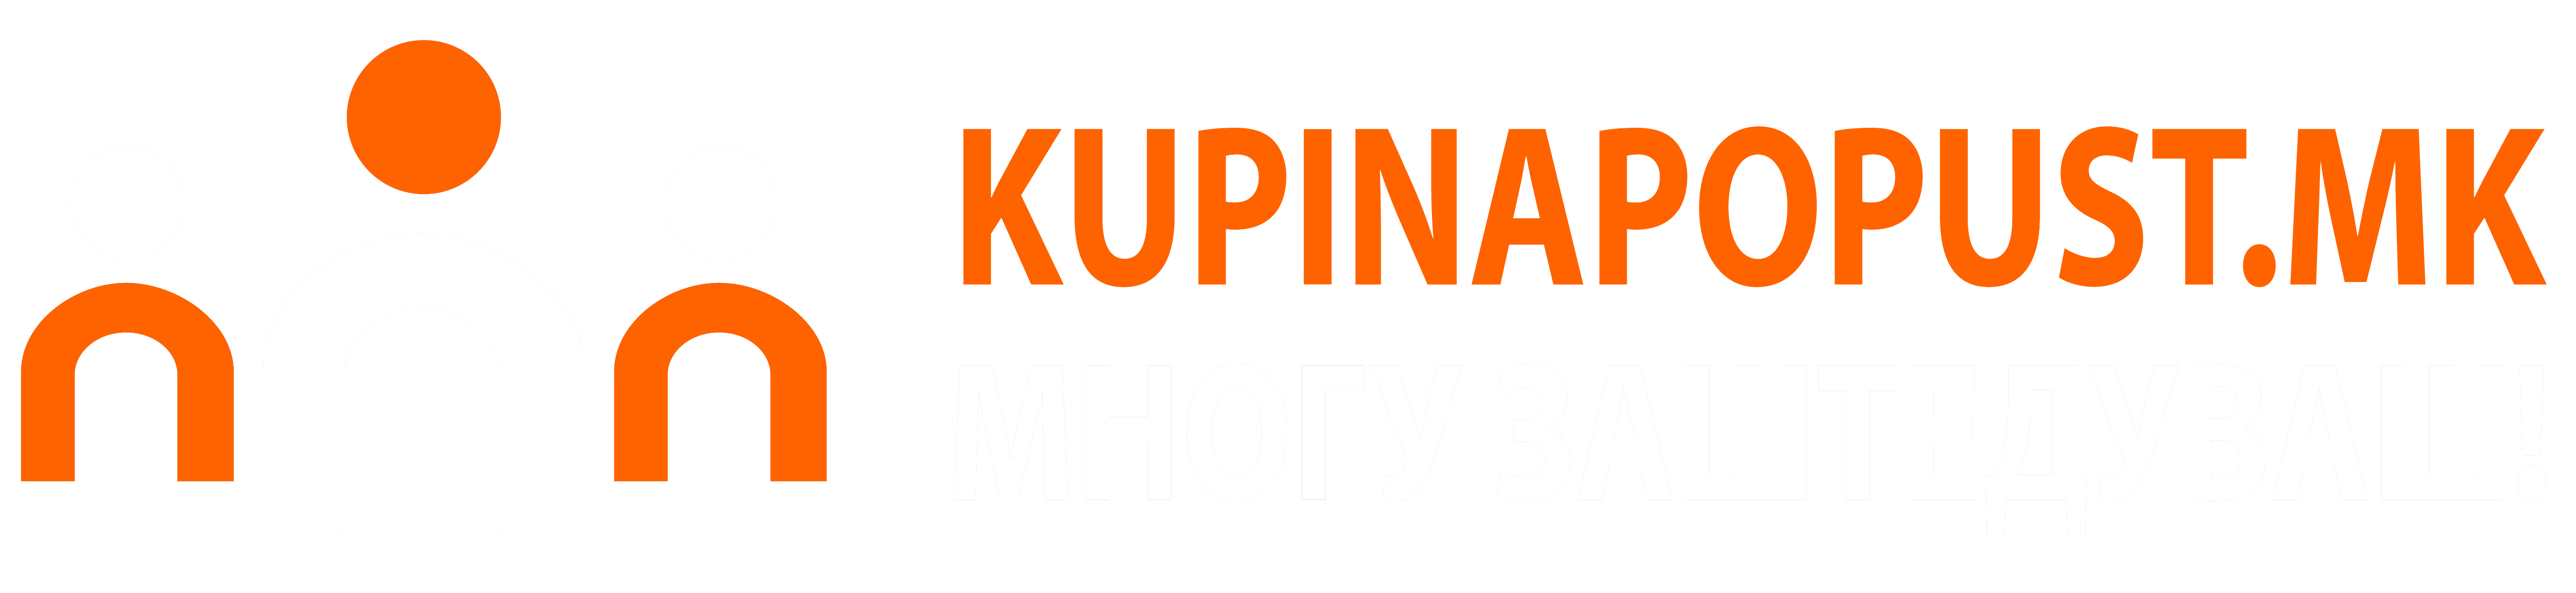 Kupinapopust Logo